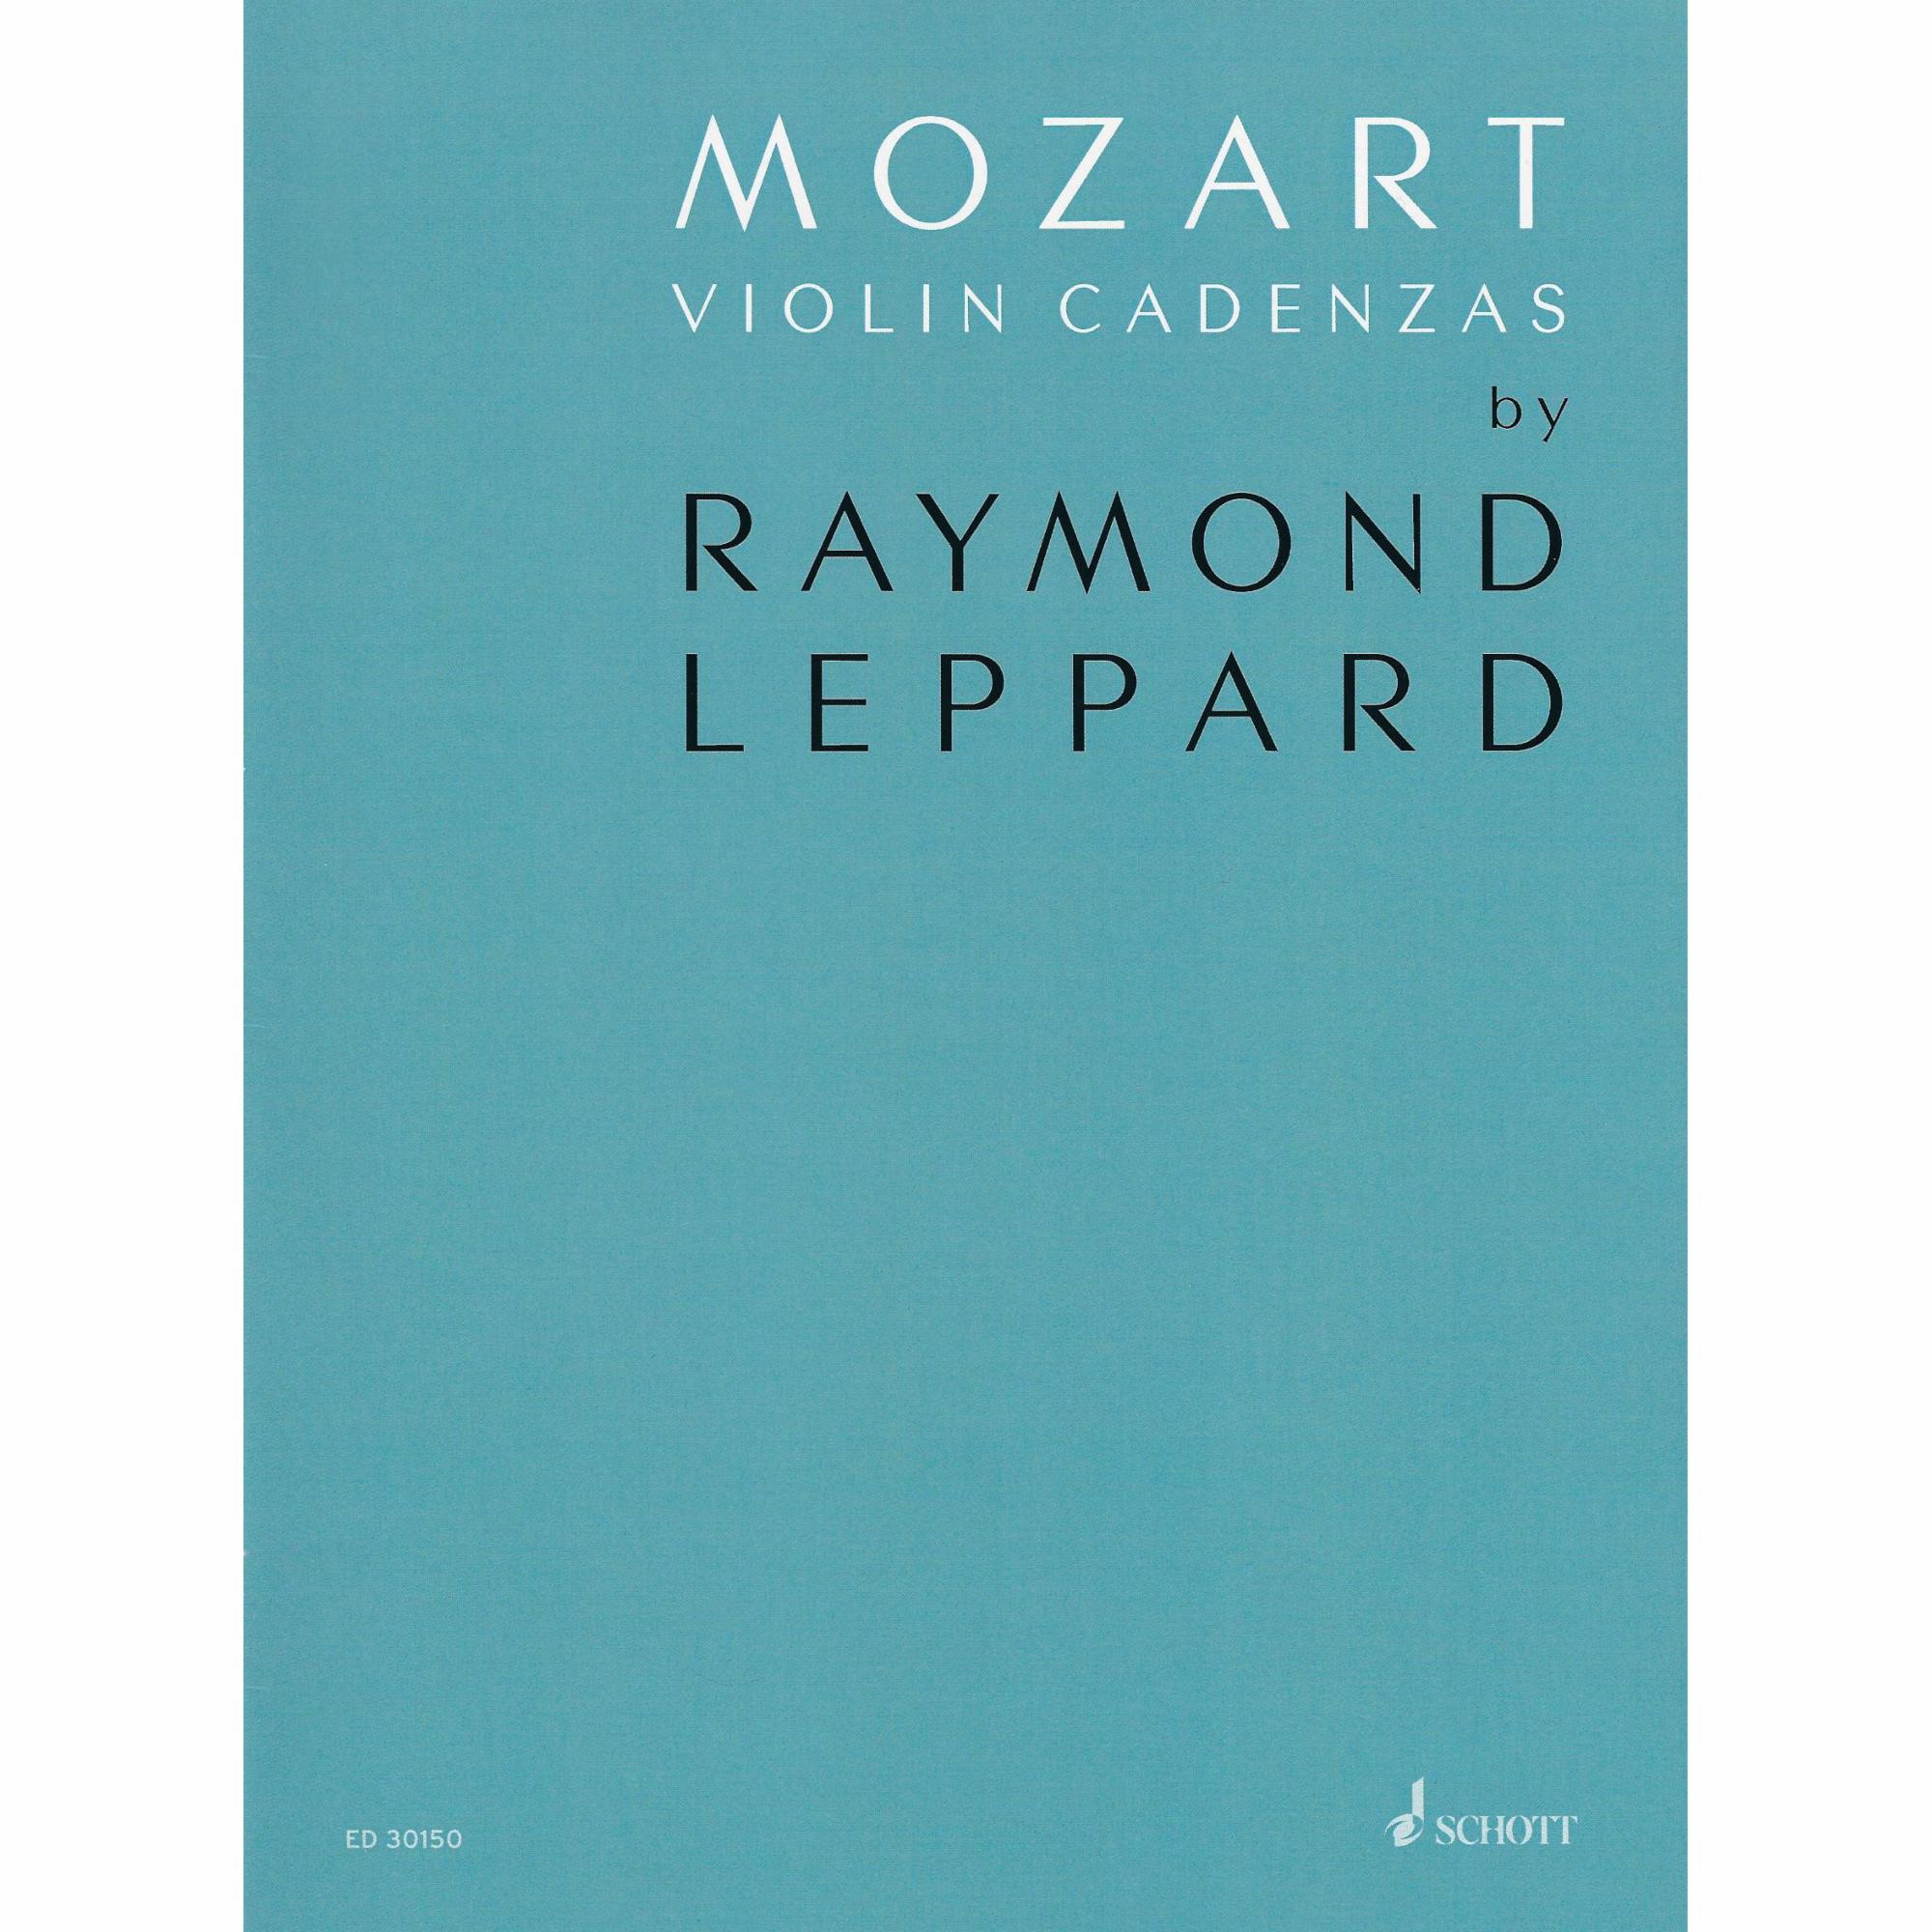 Mozart Violin Cadenzas by Raymond Leppard